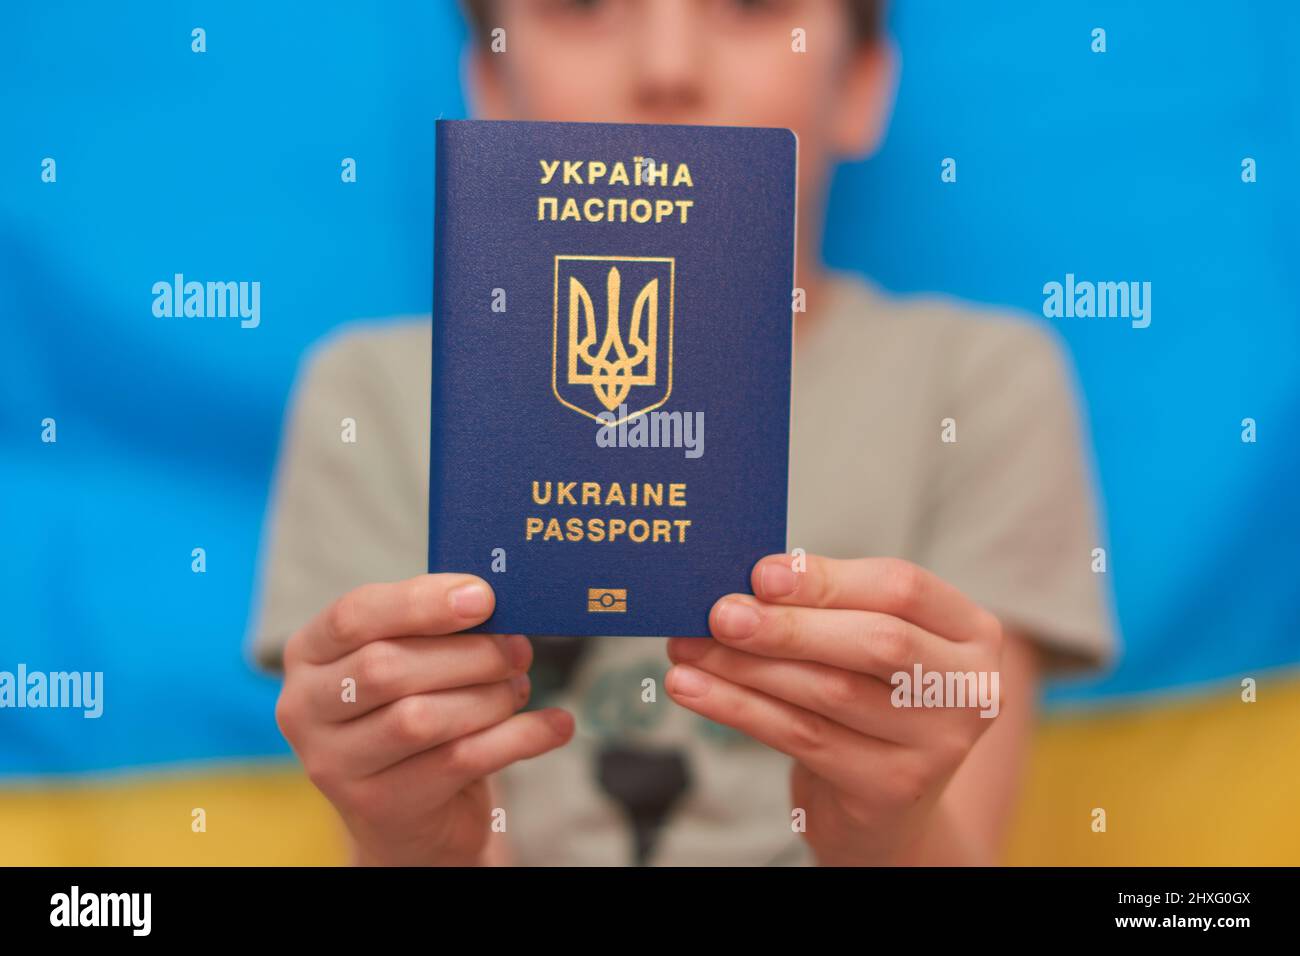 Garçon tenant entre les mains passeport ukrainien sur fond jaune-bleu. Les enfants soutiennent l'Ukraine en montrant leur cœur sur un drapeau jaune-bleu. Crise ukrainienne, agression russe en Ukraine. Guerre de la Russie contre l'Ukraine. Banque D'Images